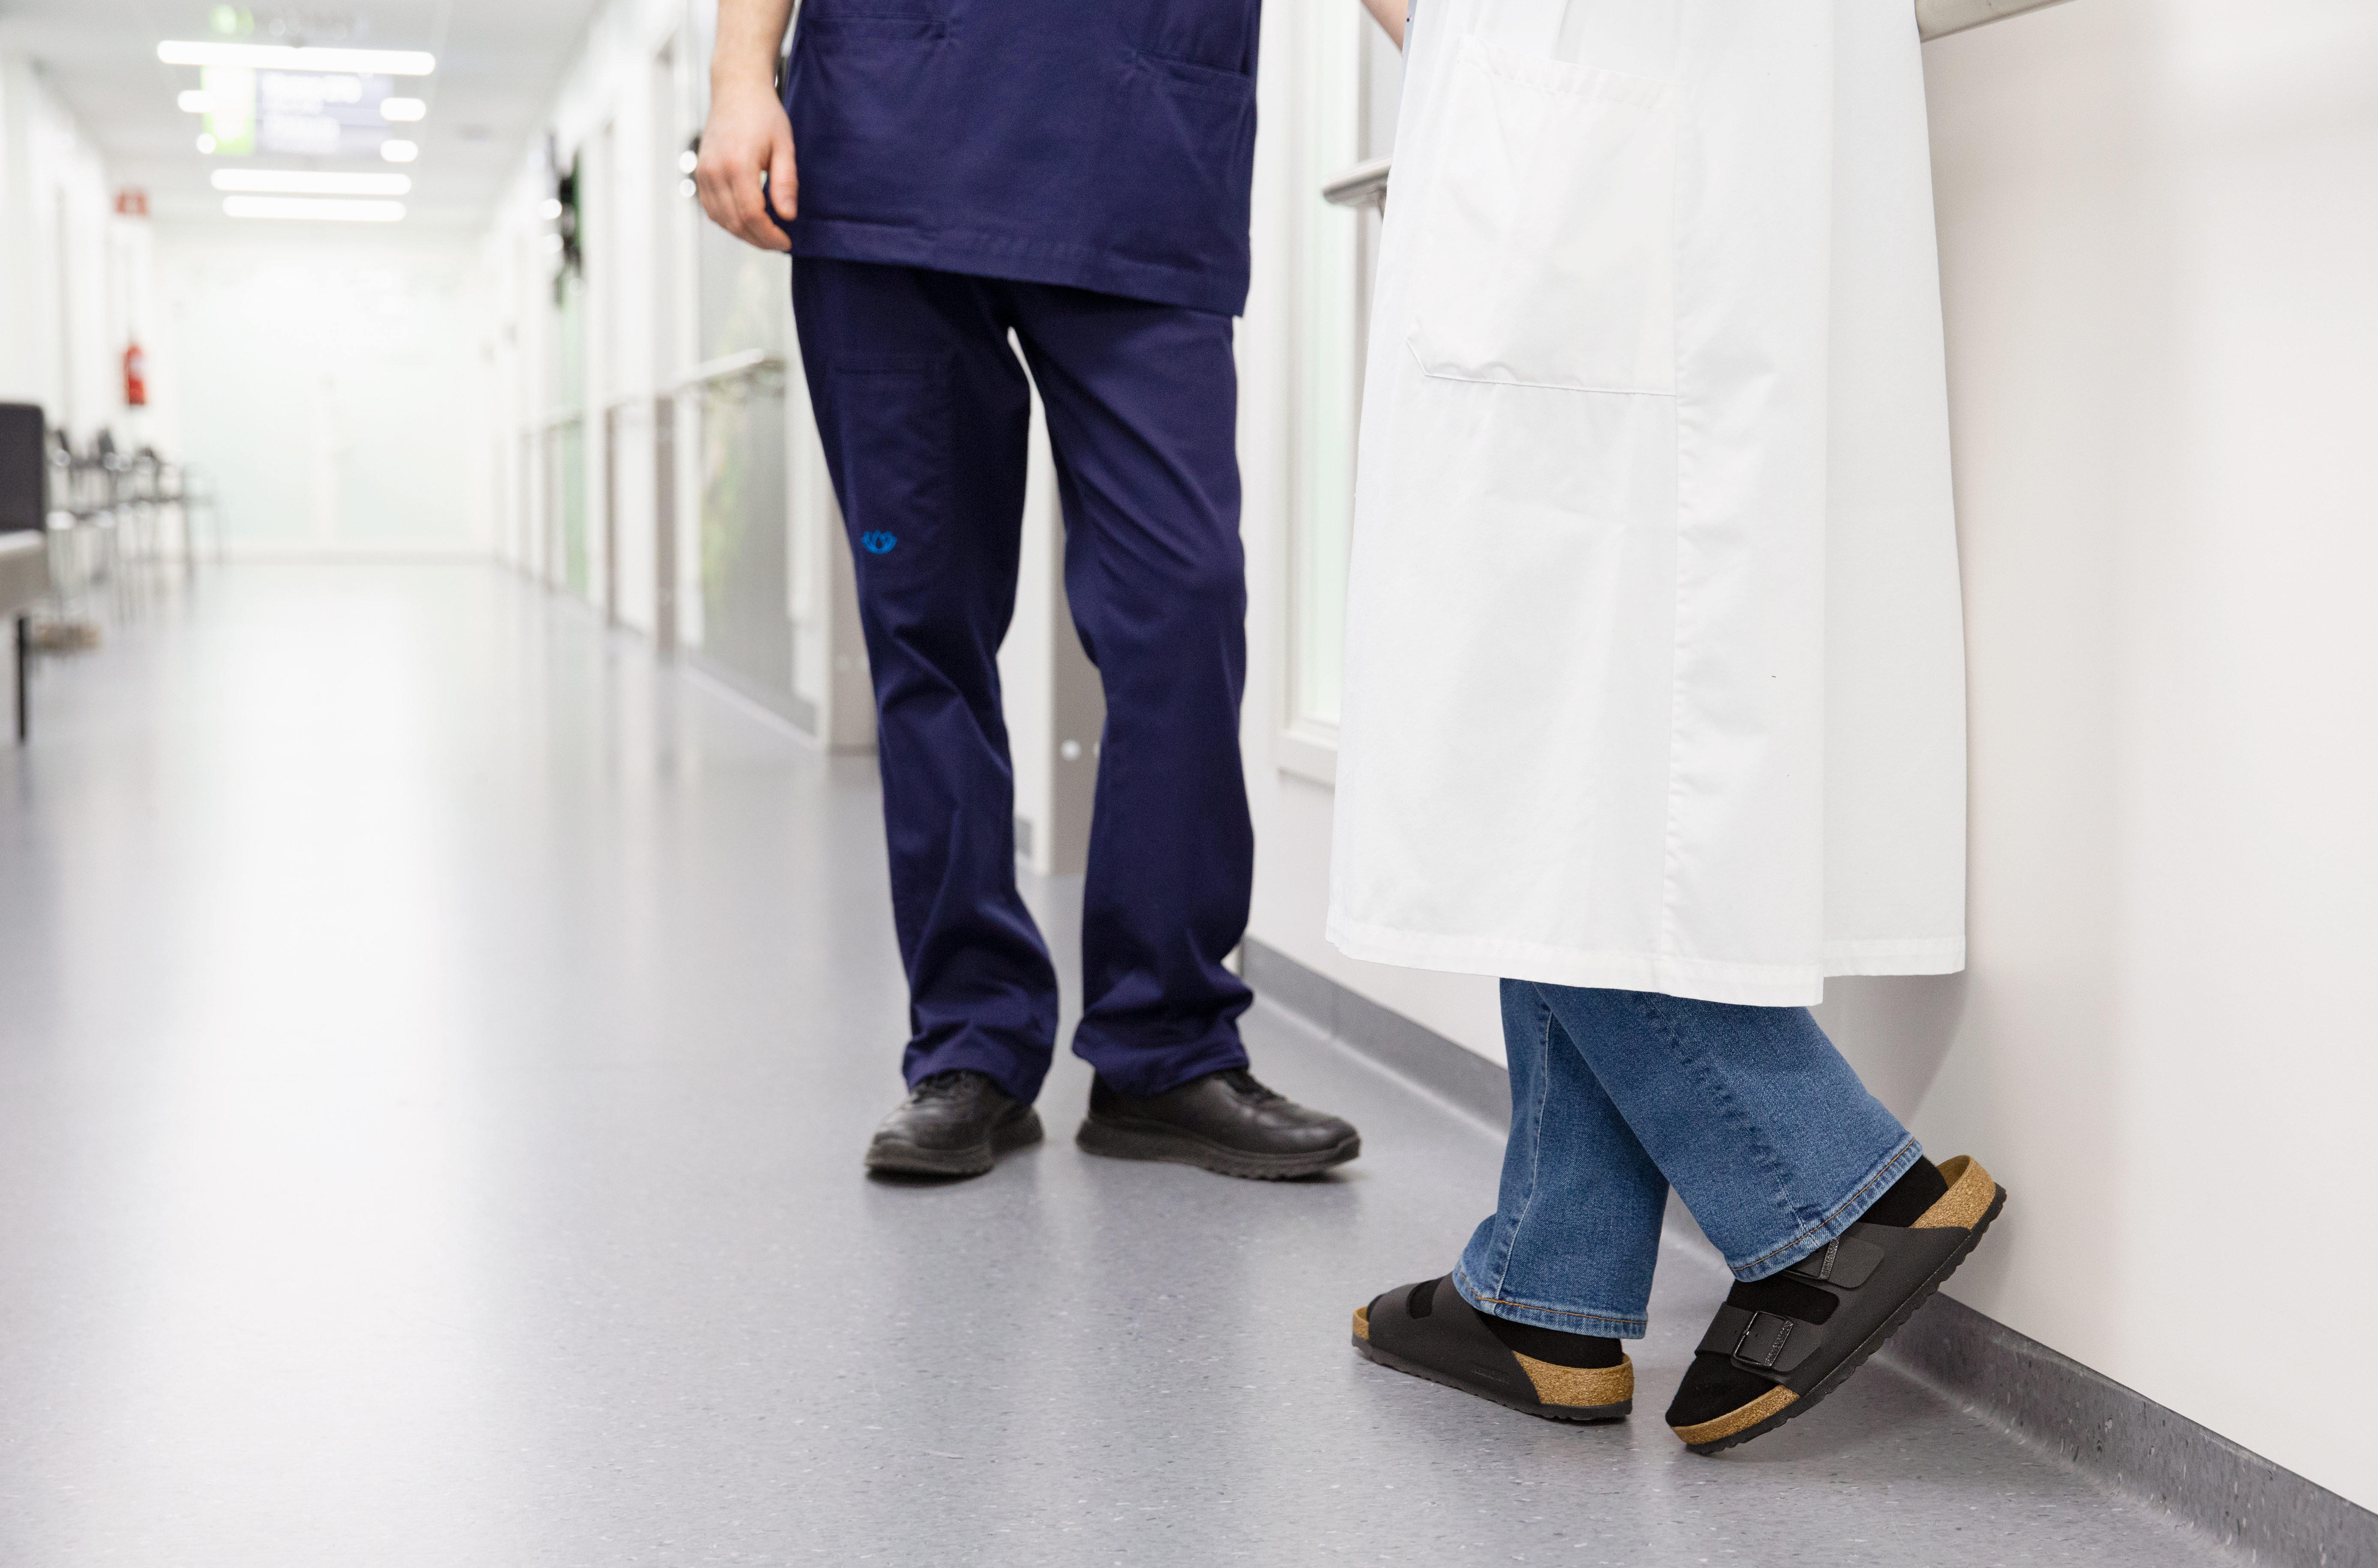 Lääkäri ja sairaanhoitaja seisovat sairaalan käytävällä.